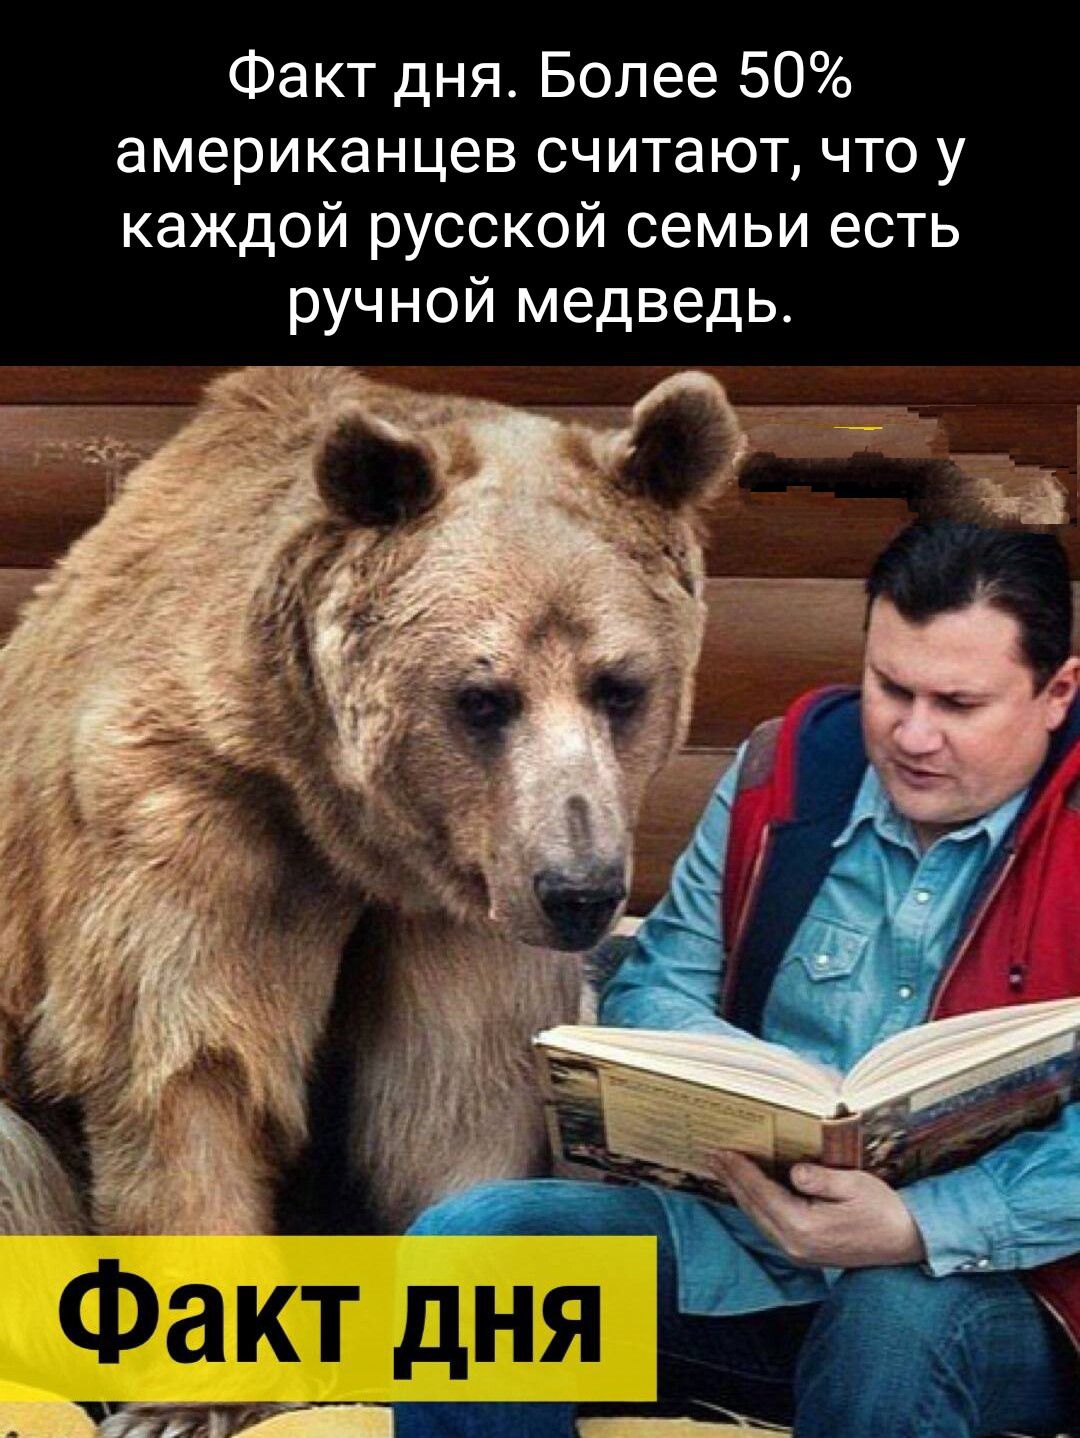 Факт дня Более 50 американцев считают что у каждой русской семьи есть ручной медведь